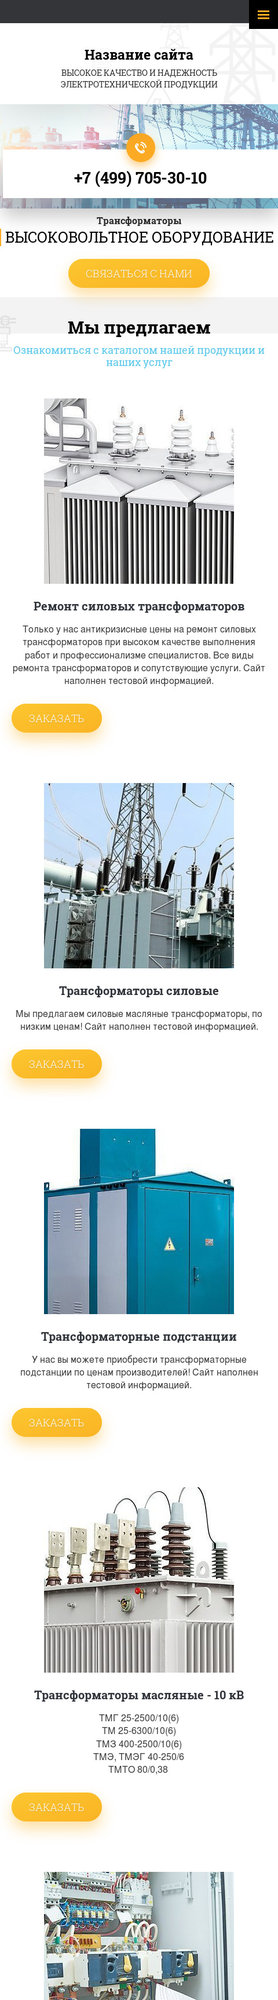 Готовый Сайт-Бизнес № 2350319 - Трансформаторы, Высоковольтное оборудование (Мобильная версия)